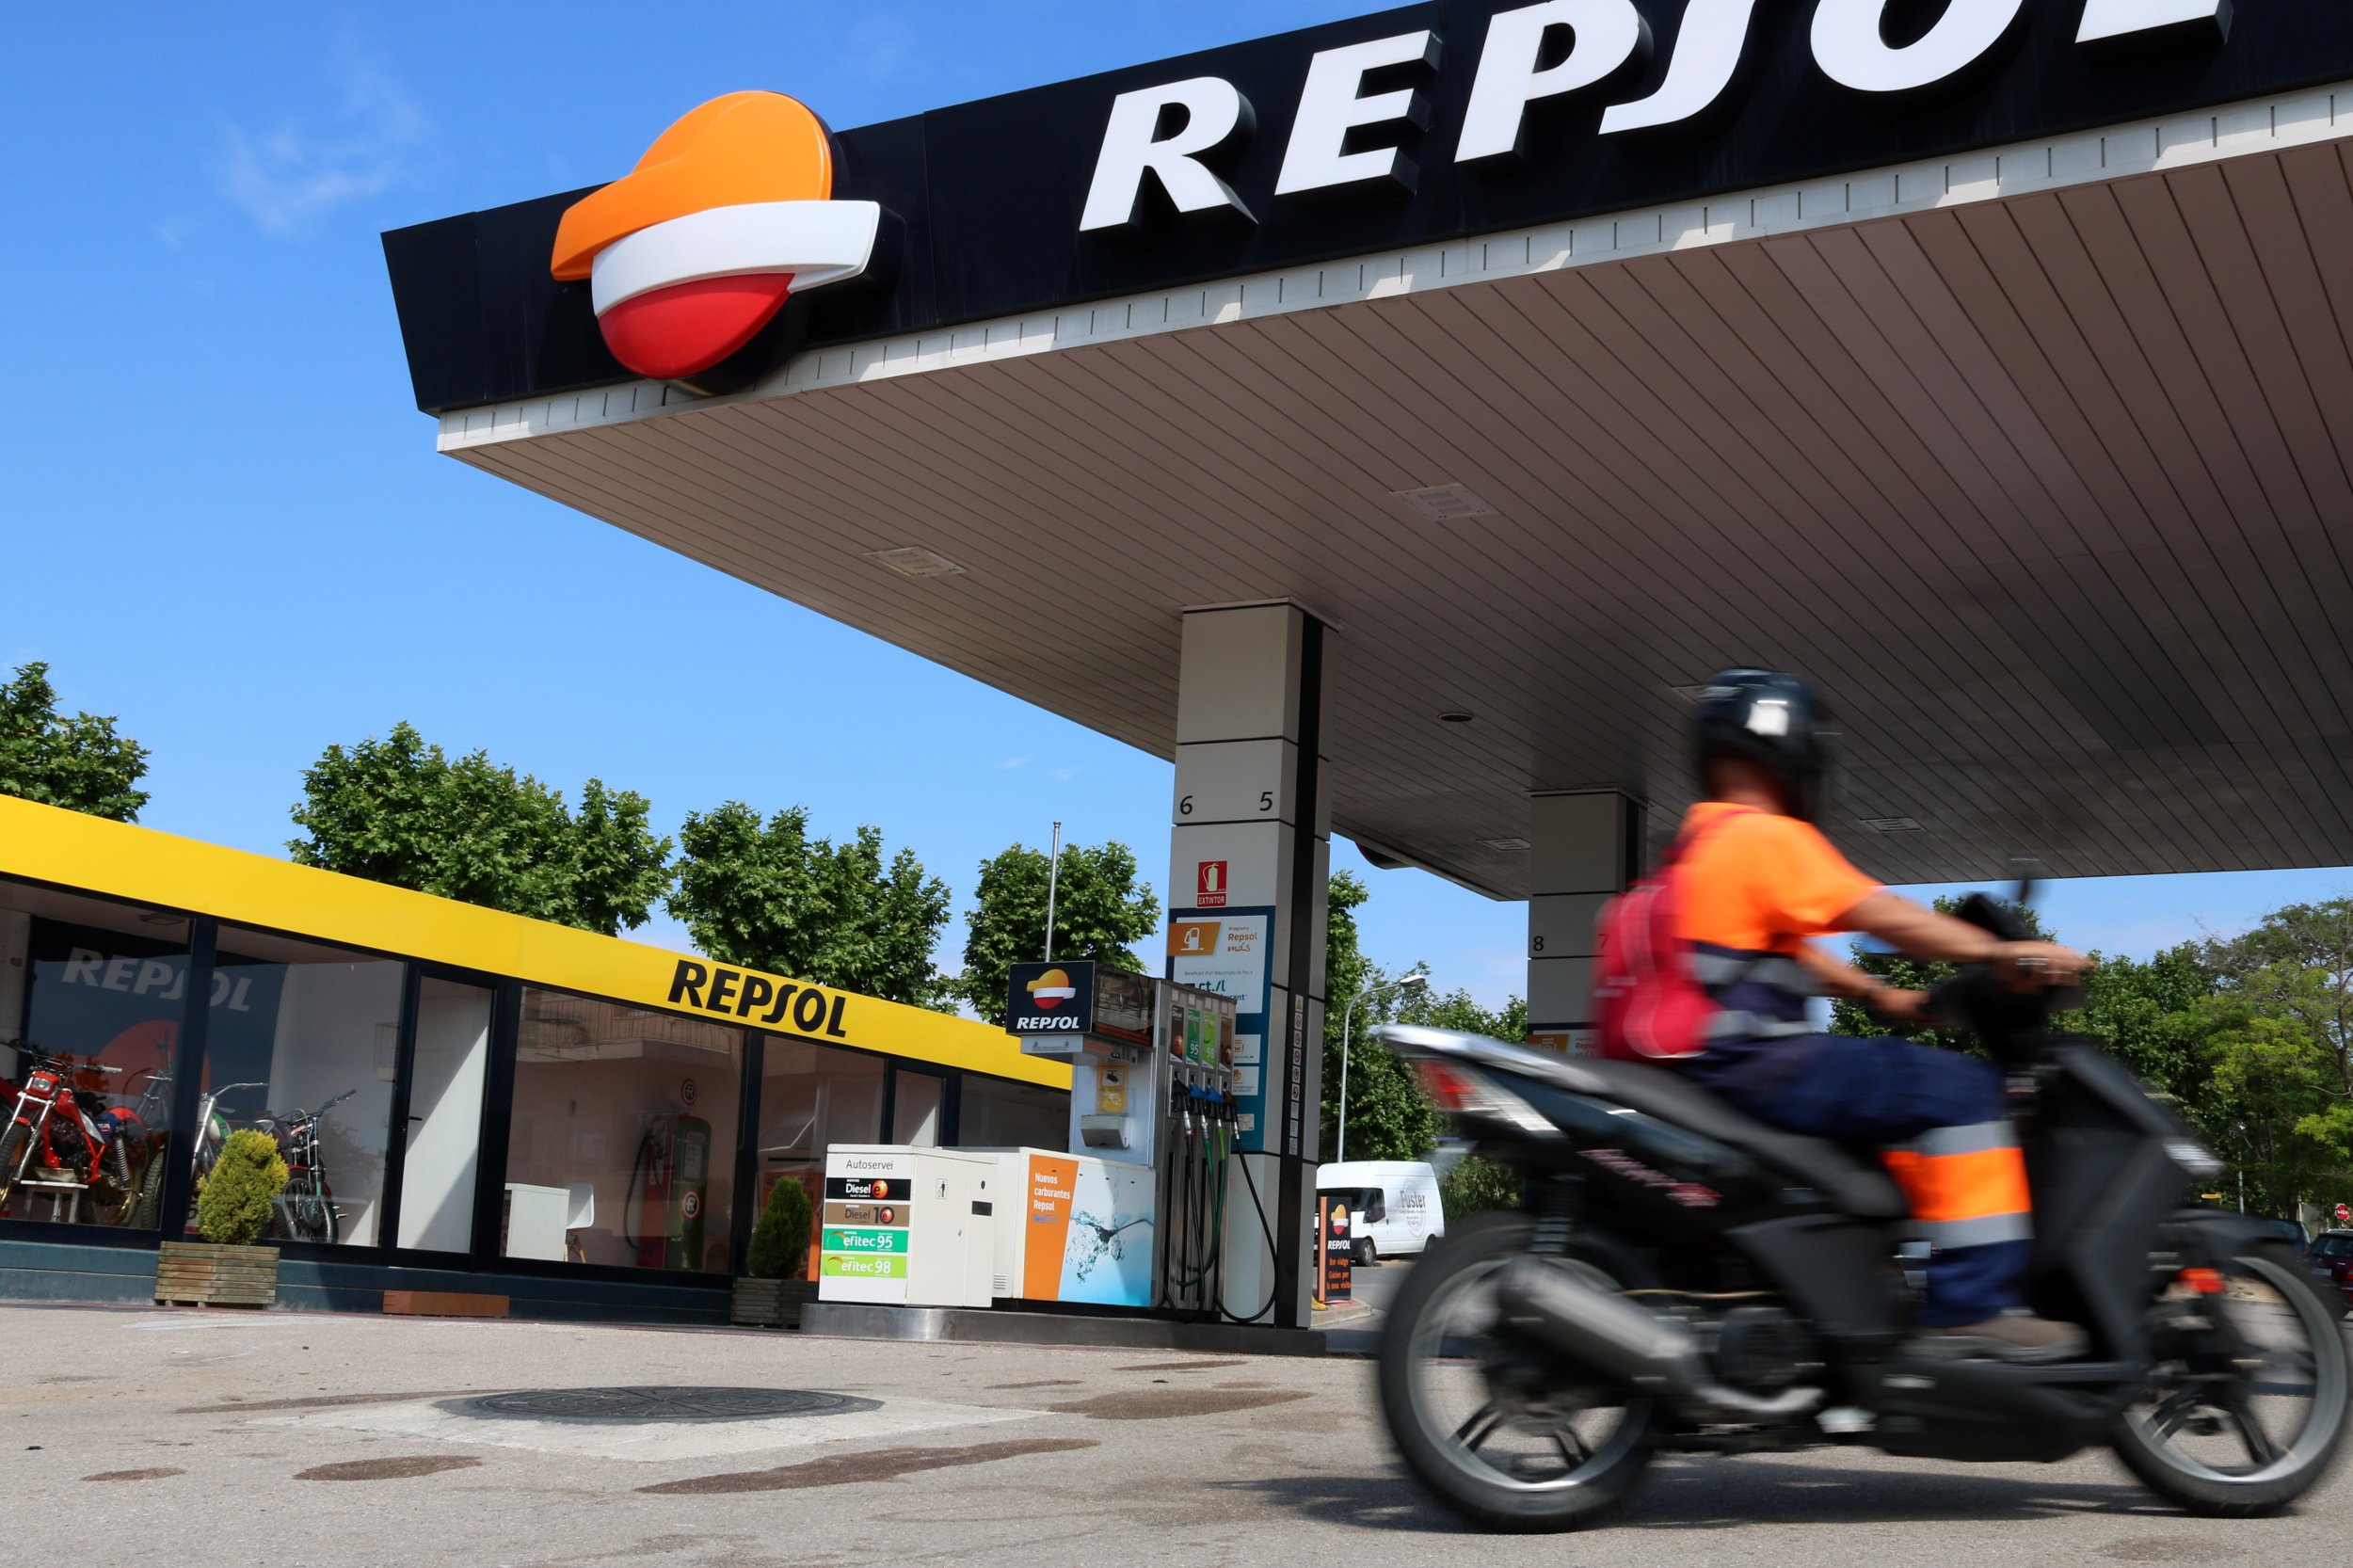 El dipòsit de la benzinera de Sant Sadurní havia millorat el sistema de seguretat